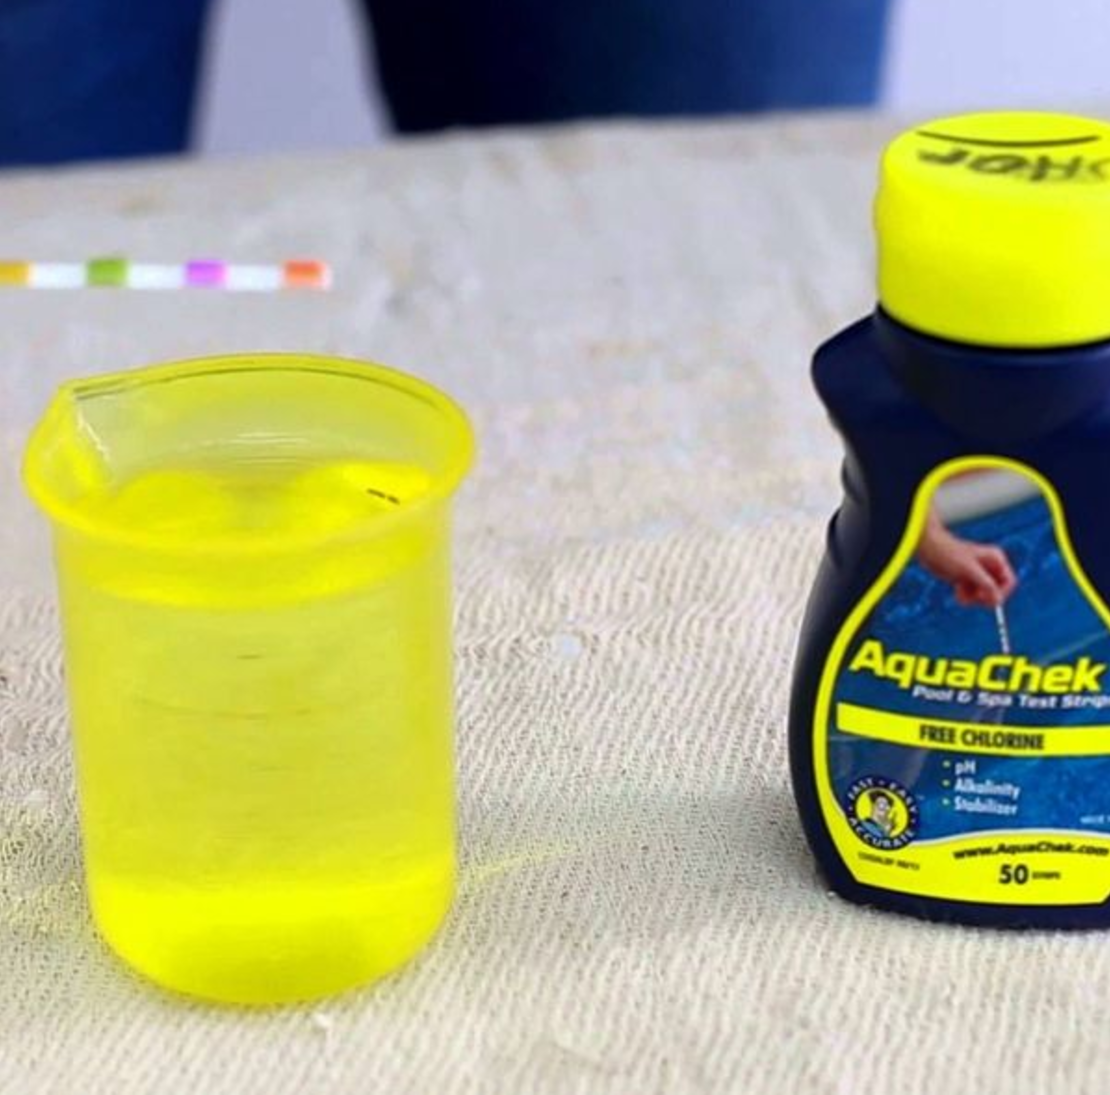 ערכת בדיקה לבריכות - AquaChek Yellow